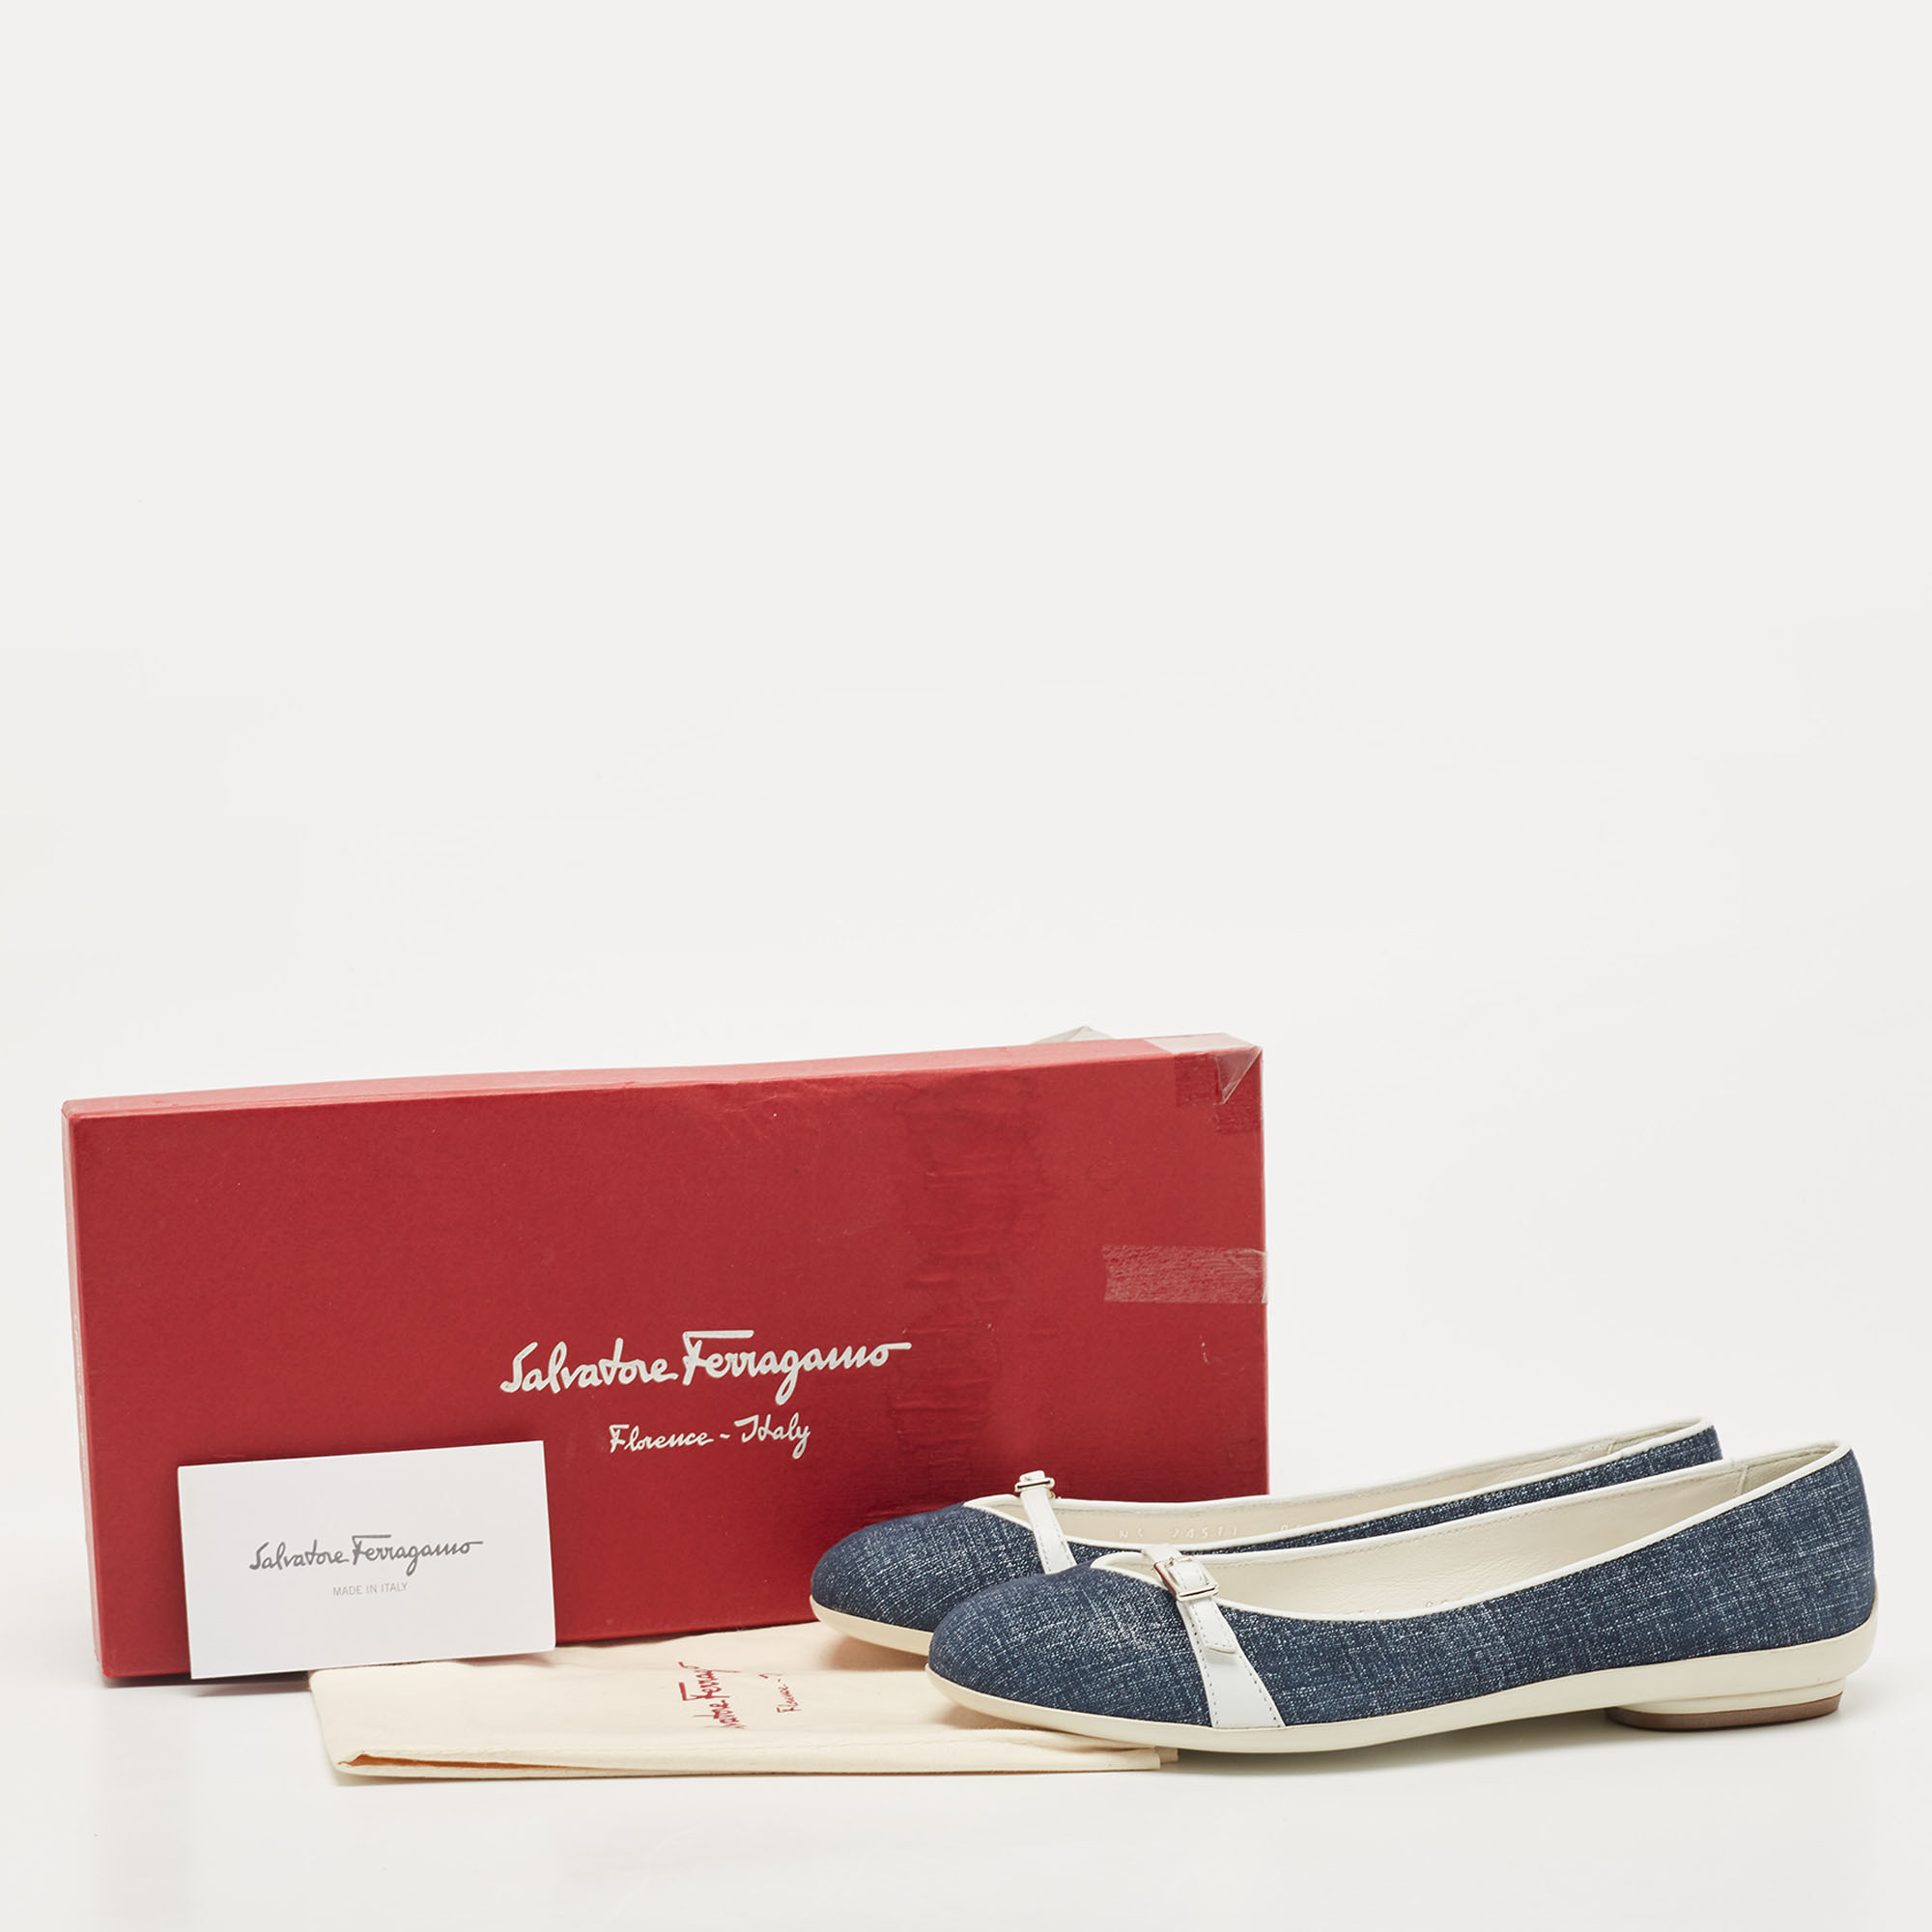 Salvatore Ferragamo Blue Denim And Leather Audrey Ballet Flats Size 35.5